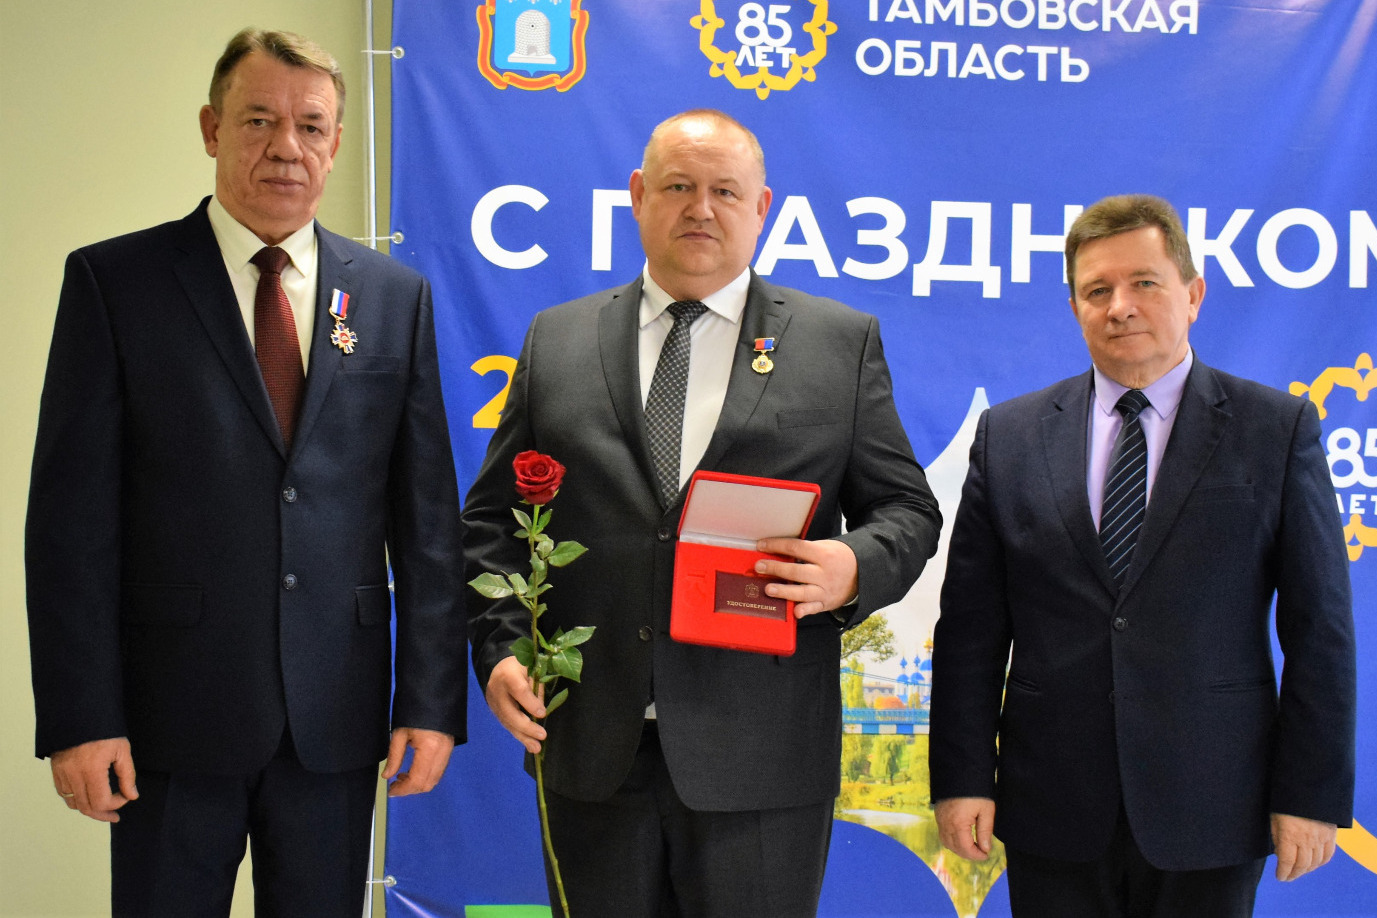 Сергей Манн, Игорь назаров и Валентин Миронов во время награждения 